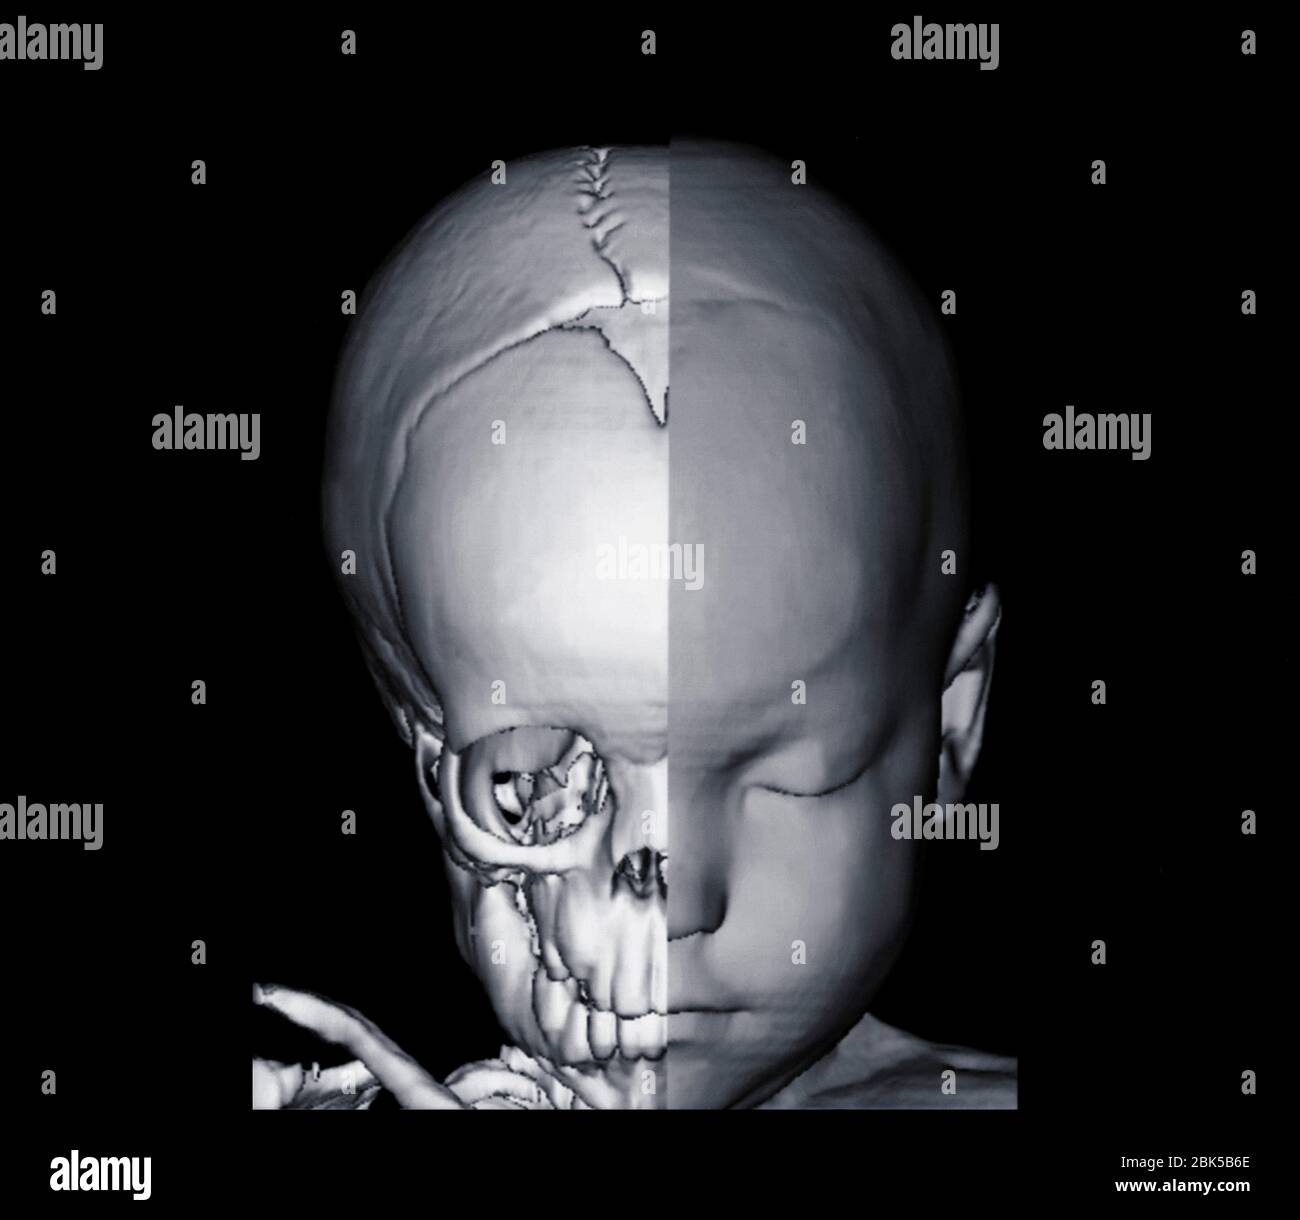 Imagen de la cabeza y medio cráneo del bebé, tomografía computarizada (TC). Foto de stock